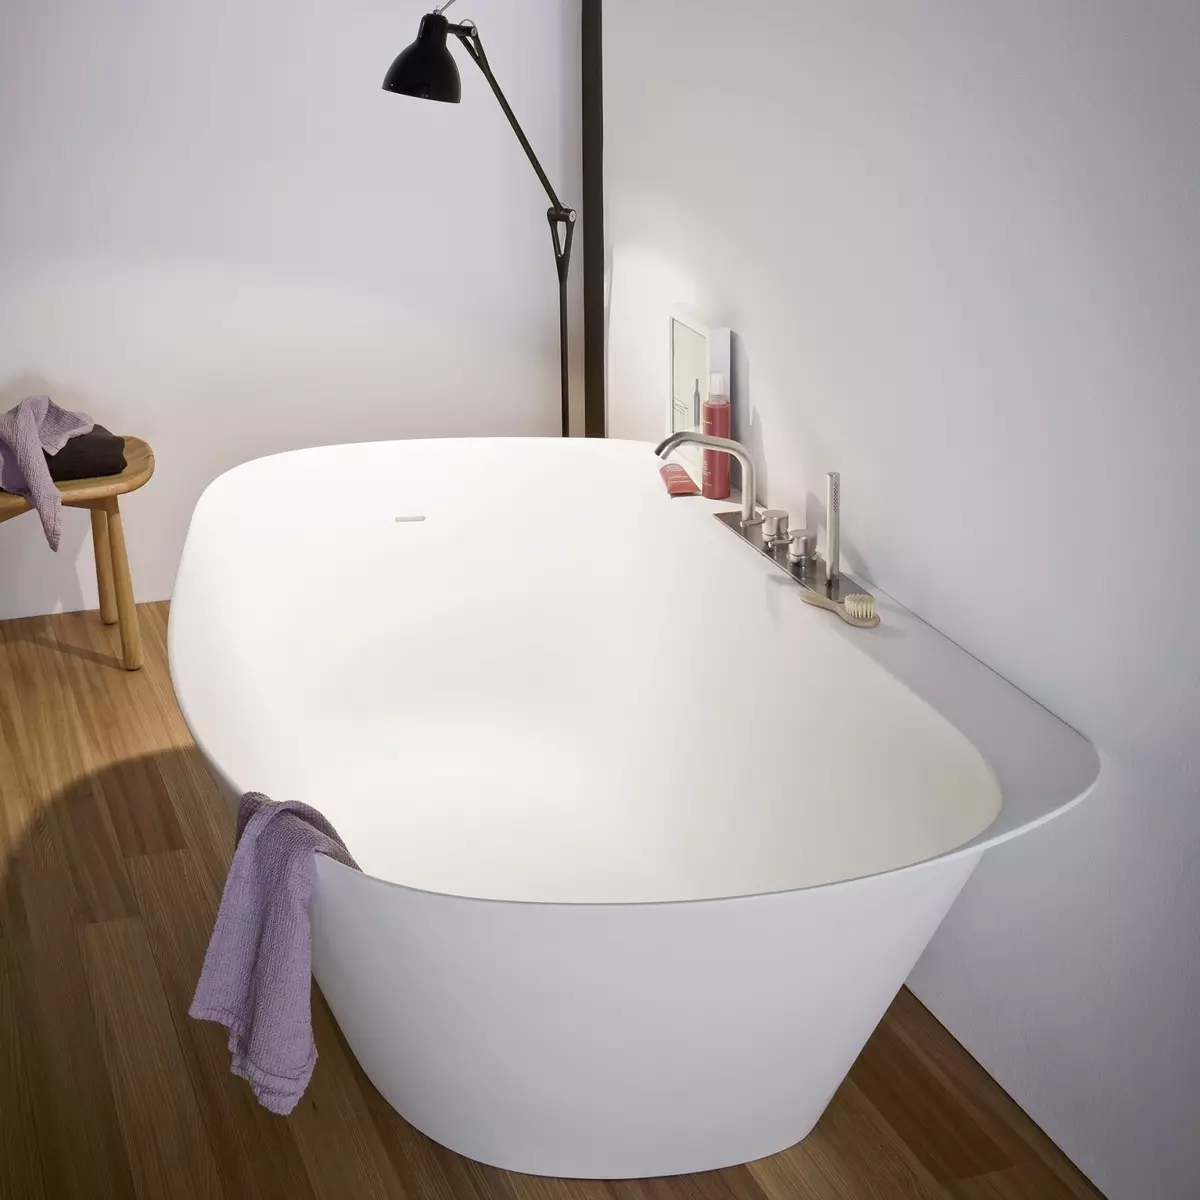 Baths (97 foto): Apa sing luwih apik kanggo milih? Sempit lan sudhut, warnane lan putih, adus 120x70, 140x70 cm lan ukuran liyane, jinis 10217_26